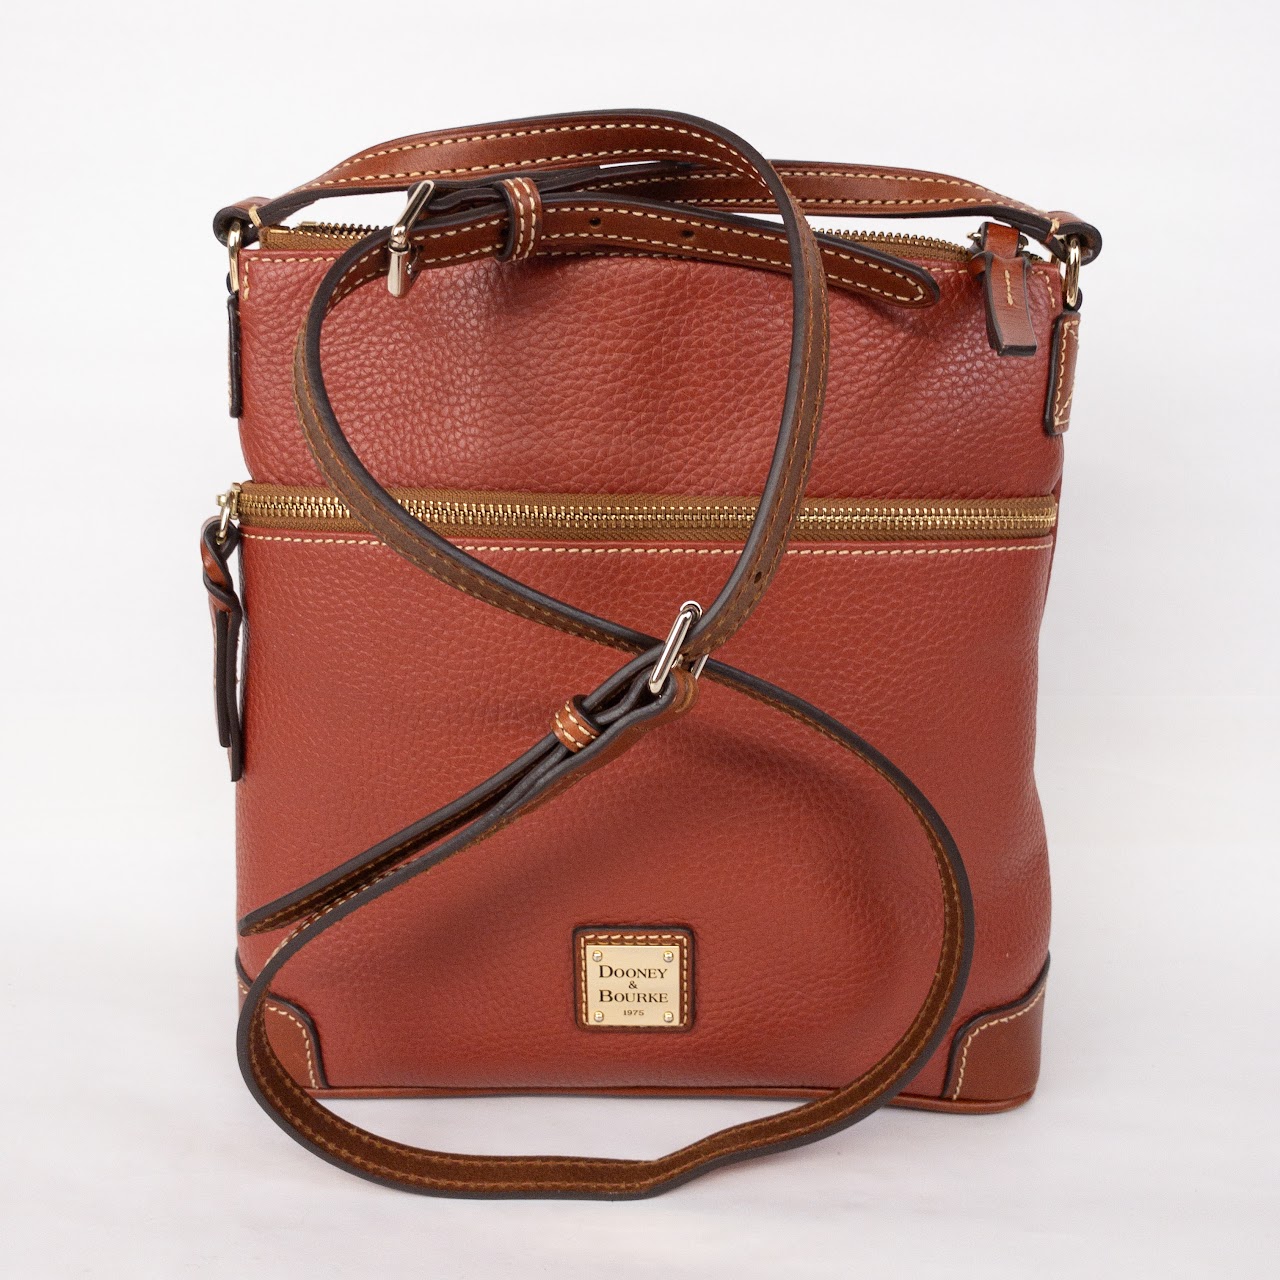 Dooney & Bourke Red Leather Shoulder Bag